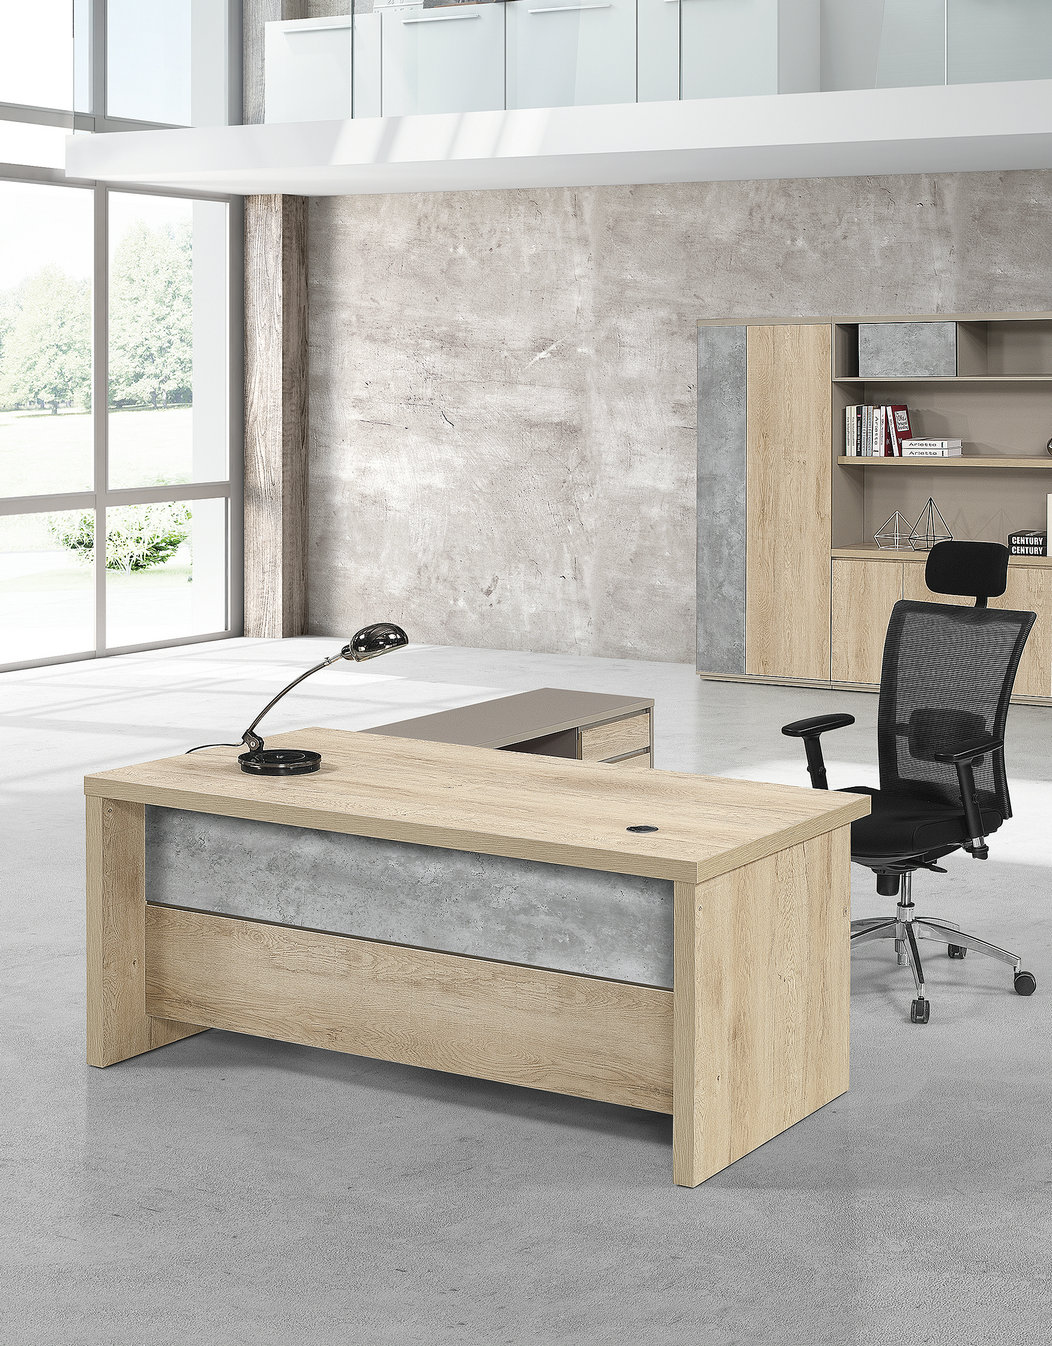 burt _ office desk executive _ 1.jpg